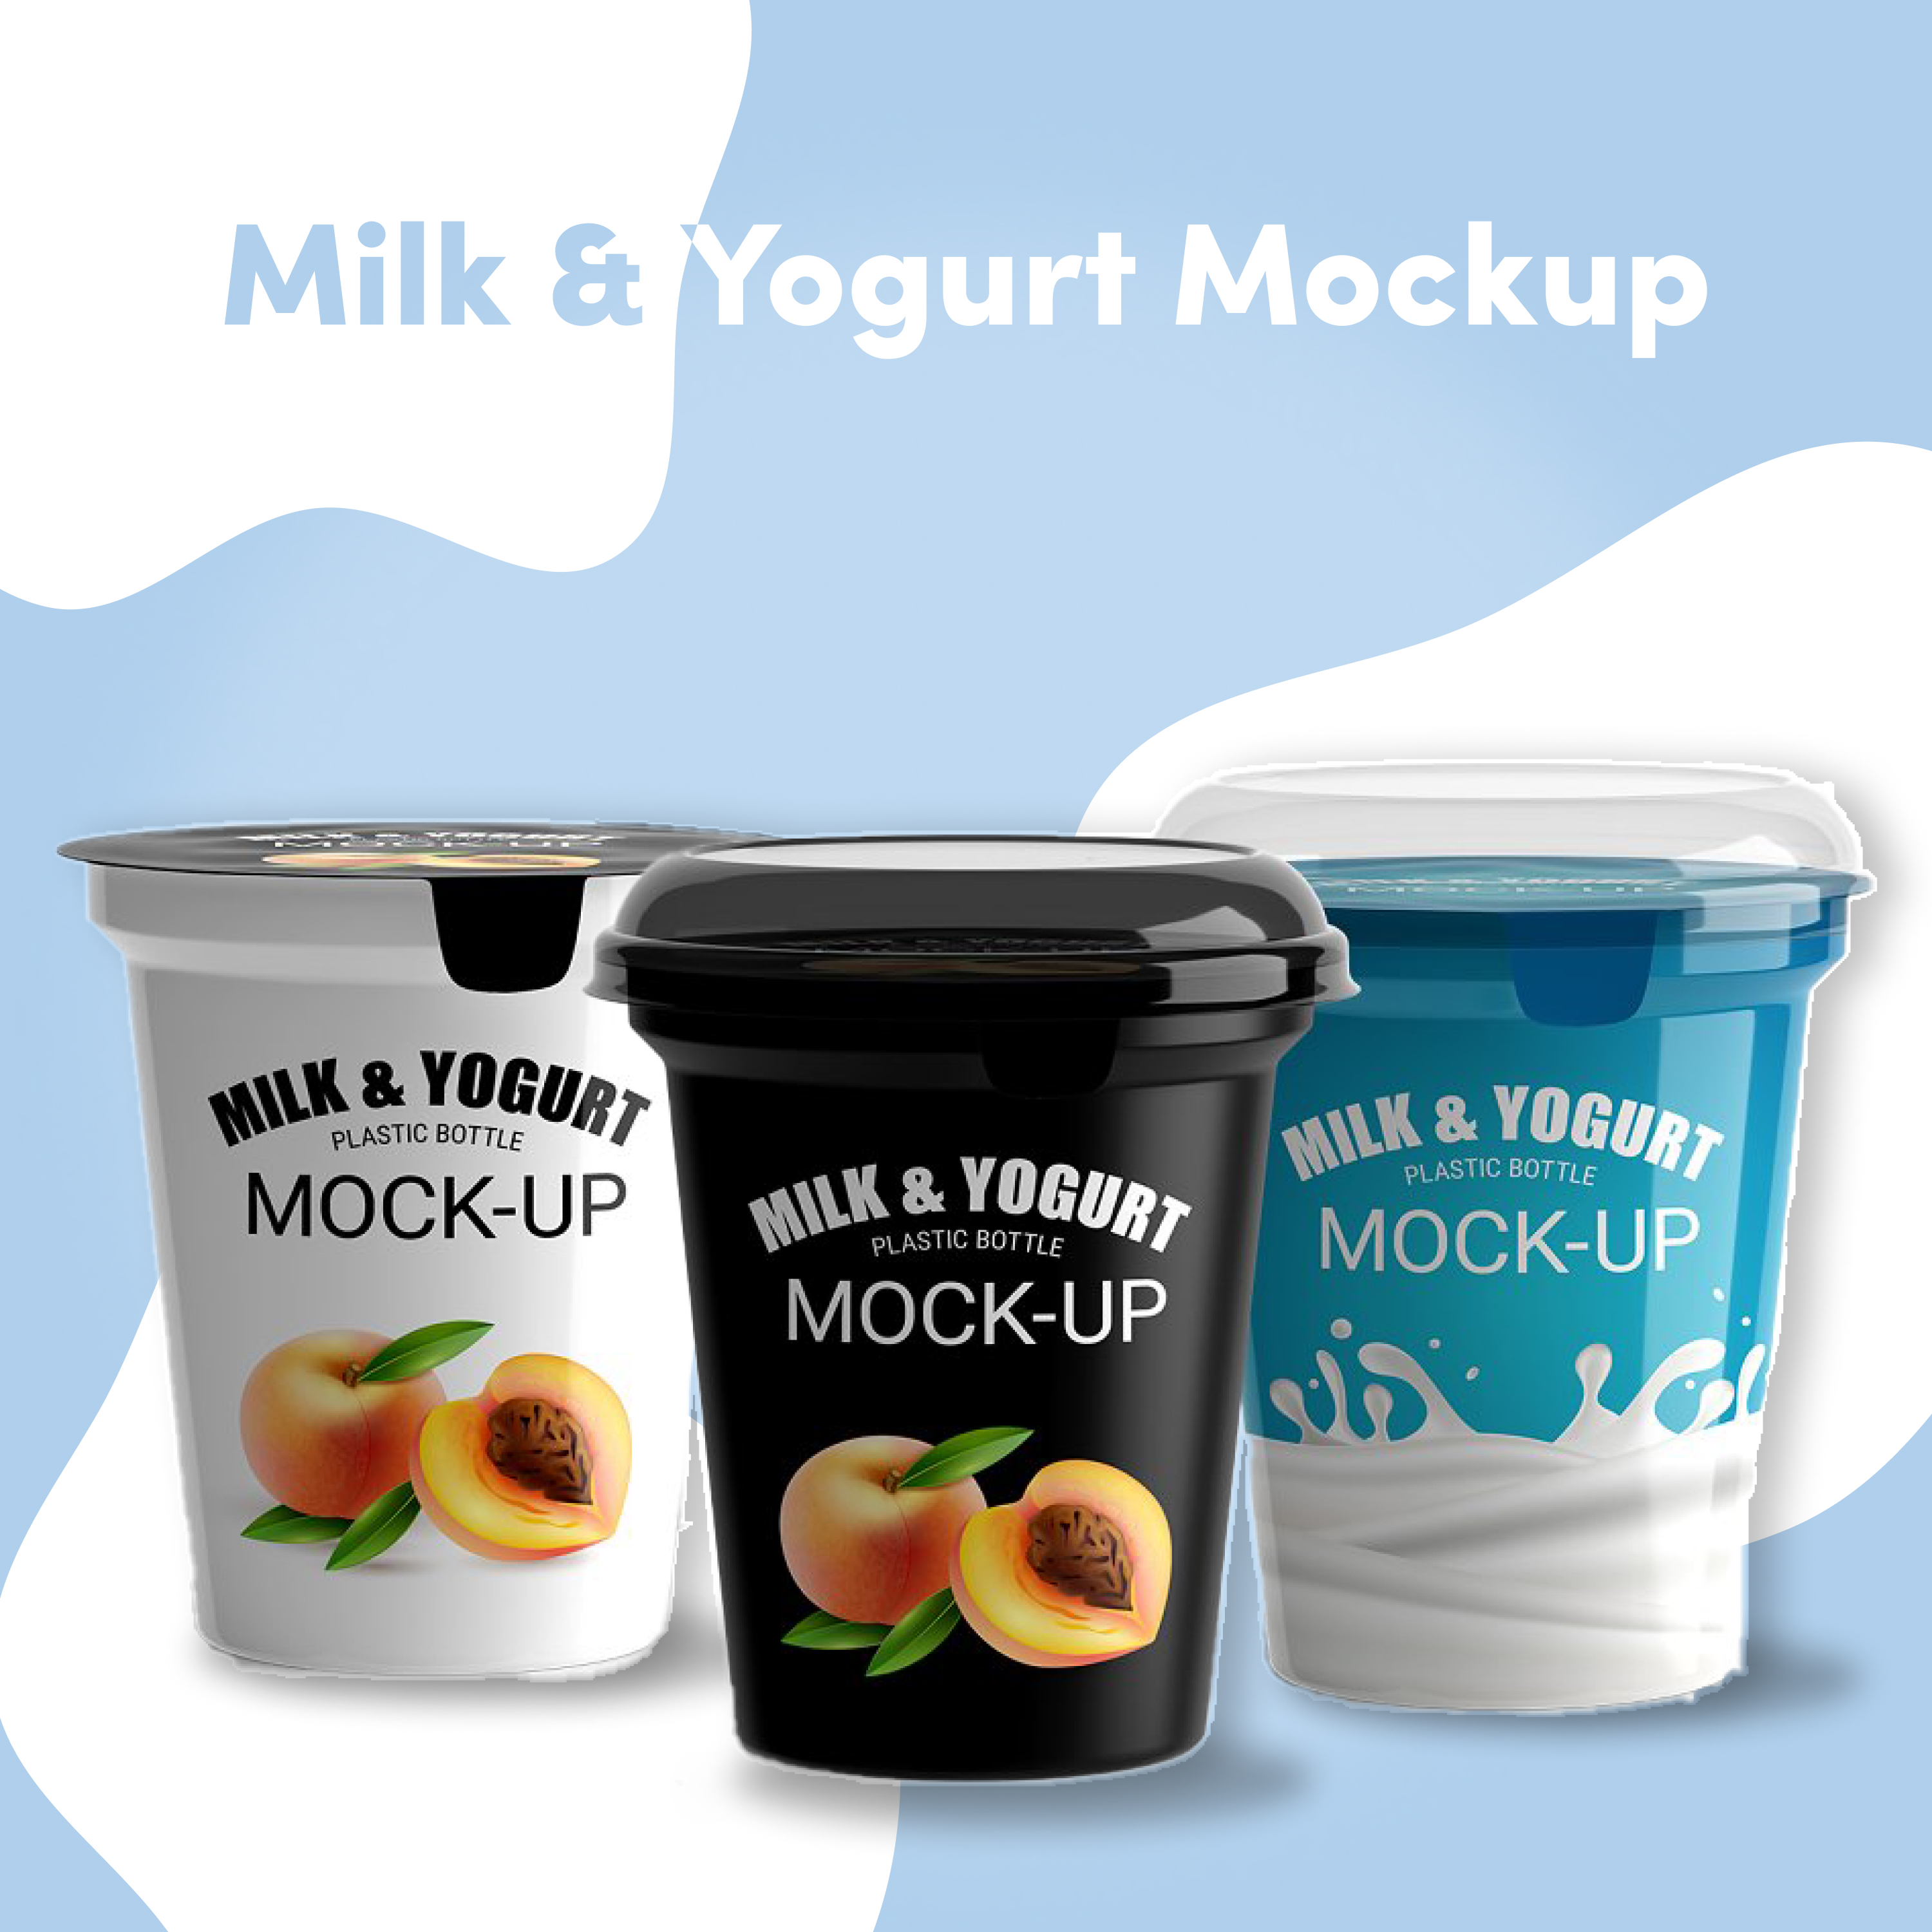 Milk yogurt mockup preview.